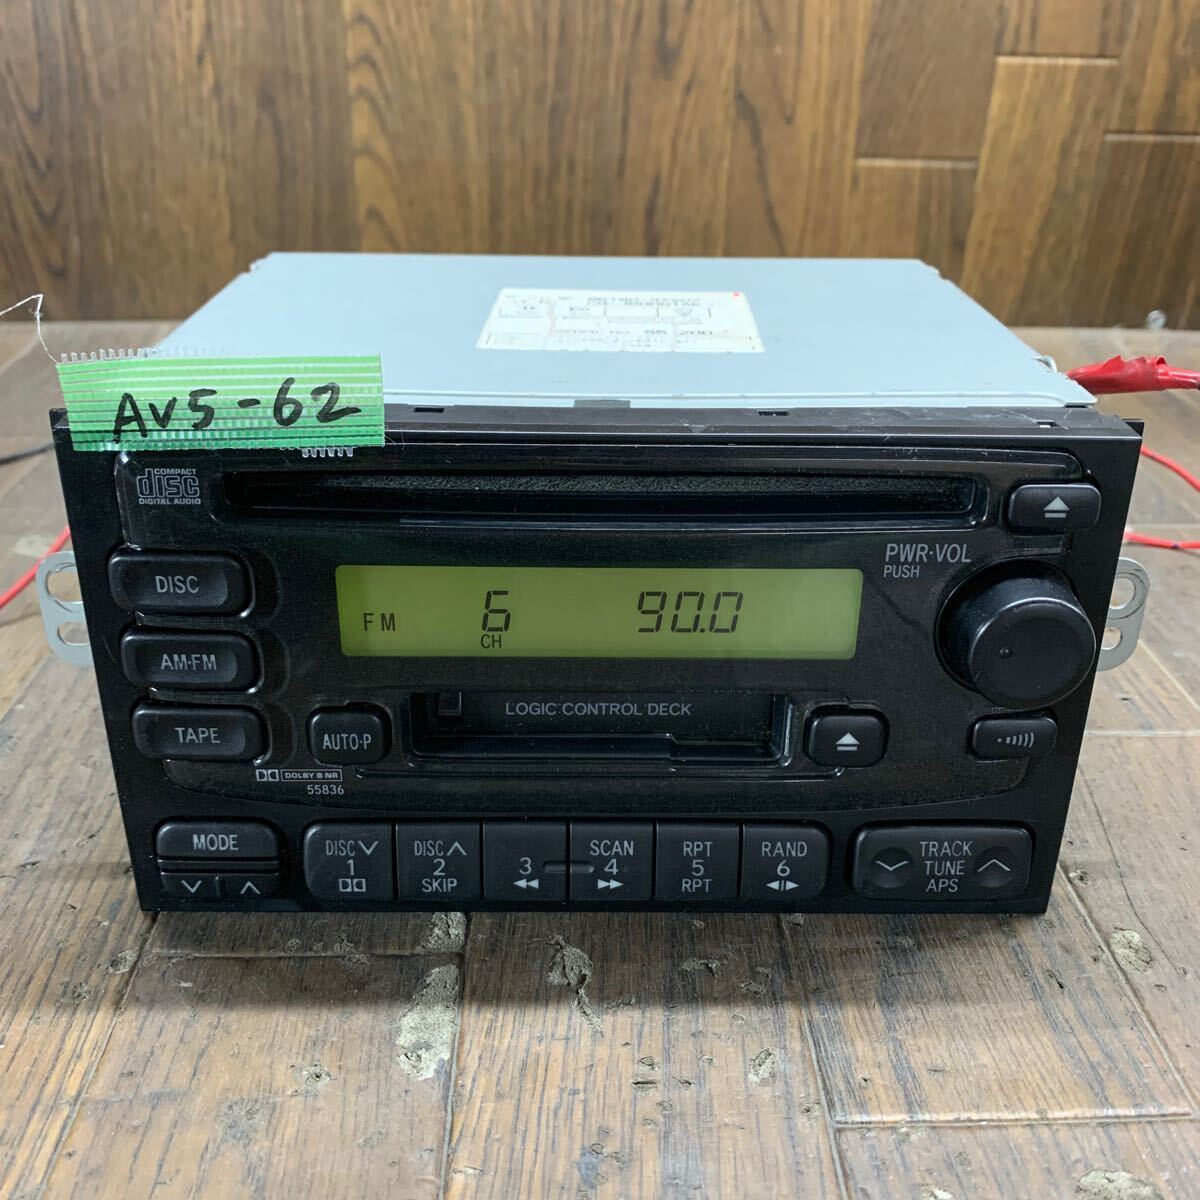 AV5-62 супер-скидка машина стерео TOYOTA 86180-97207 CQ-JD0001AK CD кассета FM/AM плеер панель корпус только простой рабочее состояние подтверждено б/у текущее состояние товар 